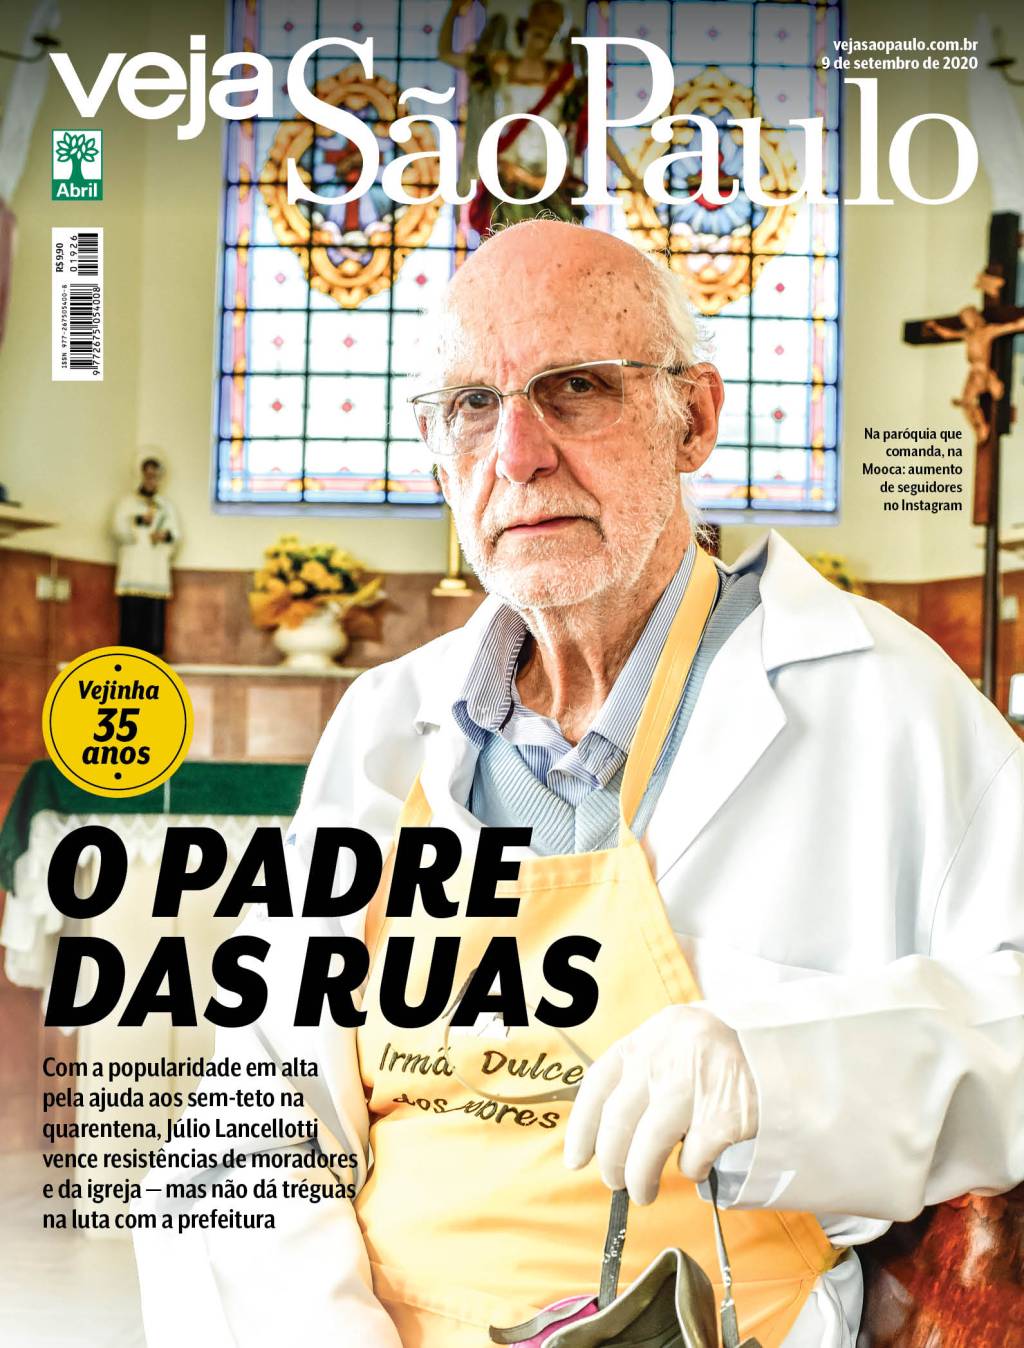 Imagem mostra a capa da revista Veja São Paulo com o padre Julio Lancellotti usando avental e com fisionomia séria, dentro de sua igreja, na Mooca